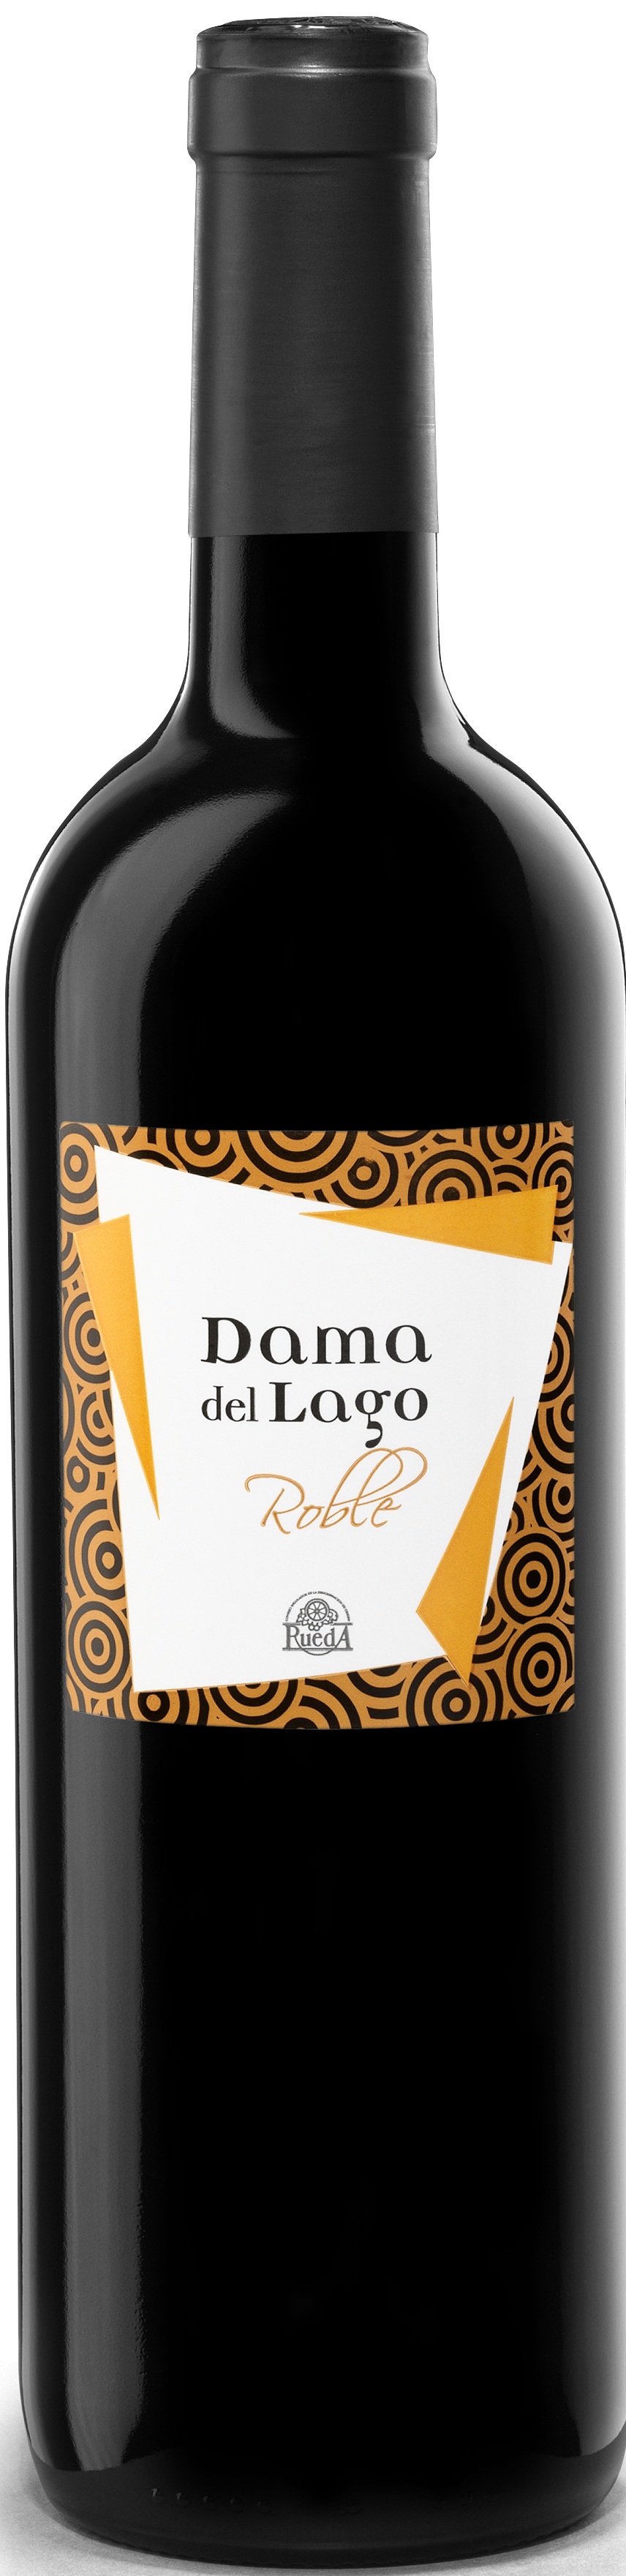 Image of Wine bottle Dama del Lago Roble